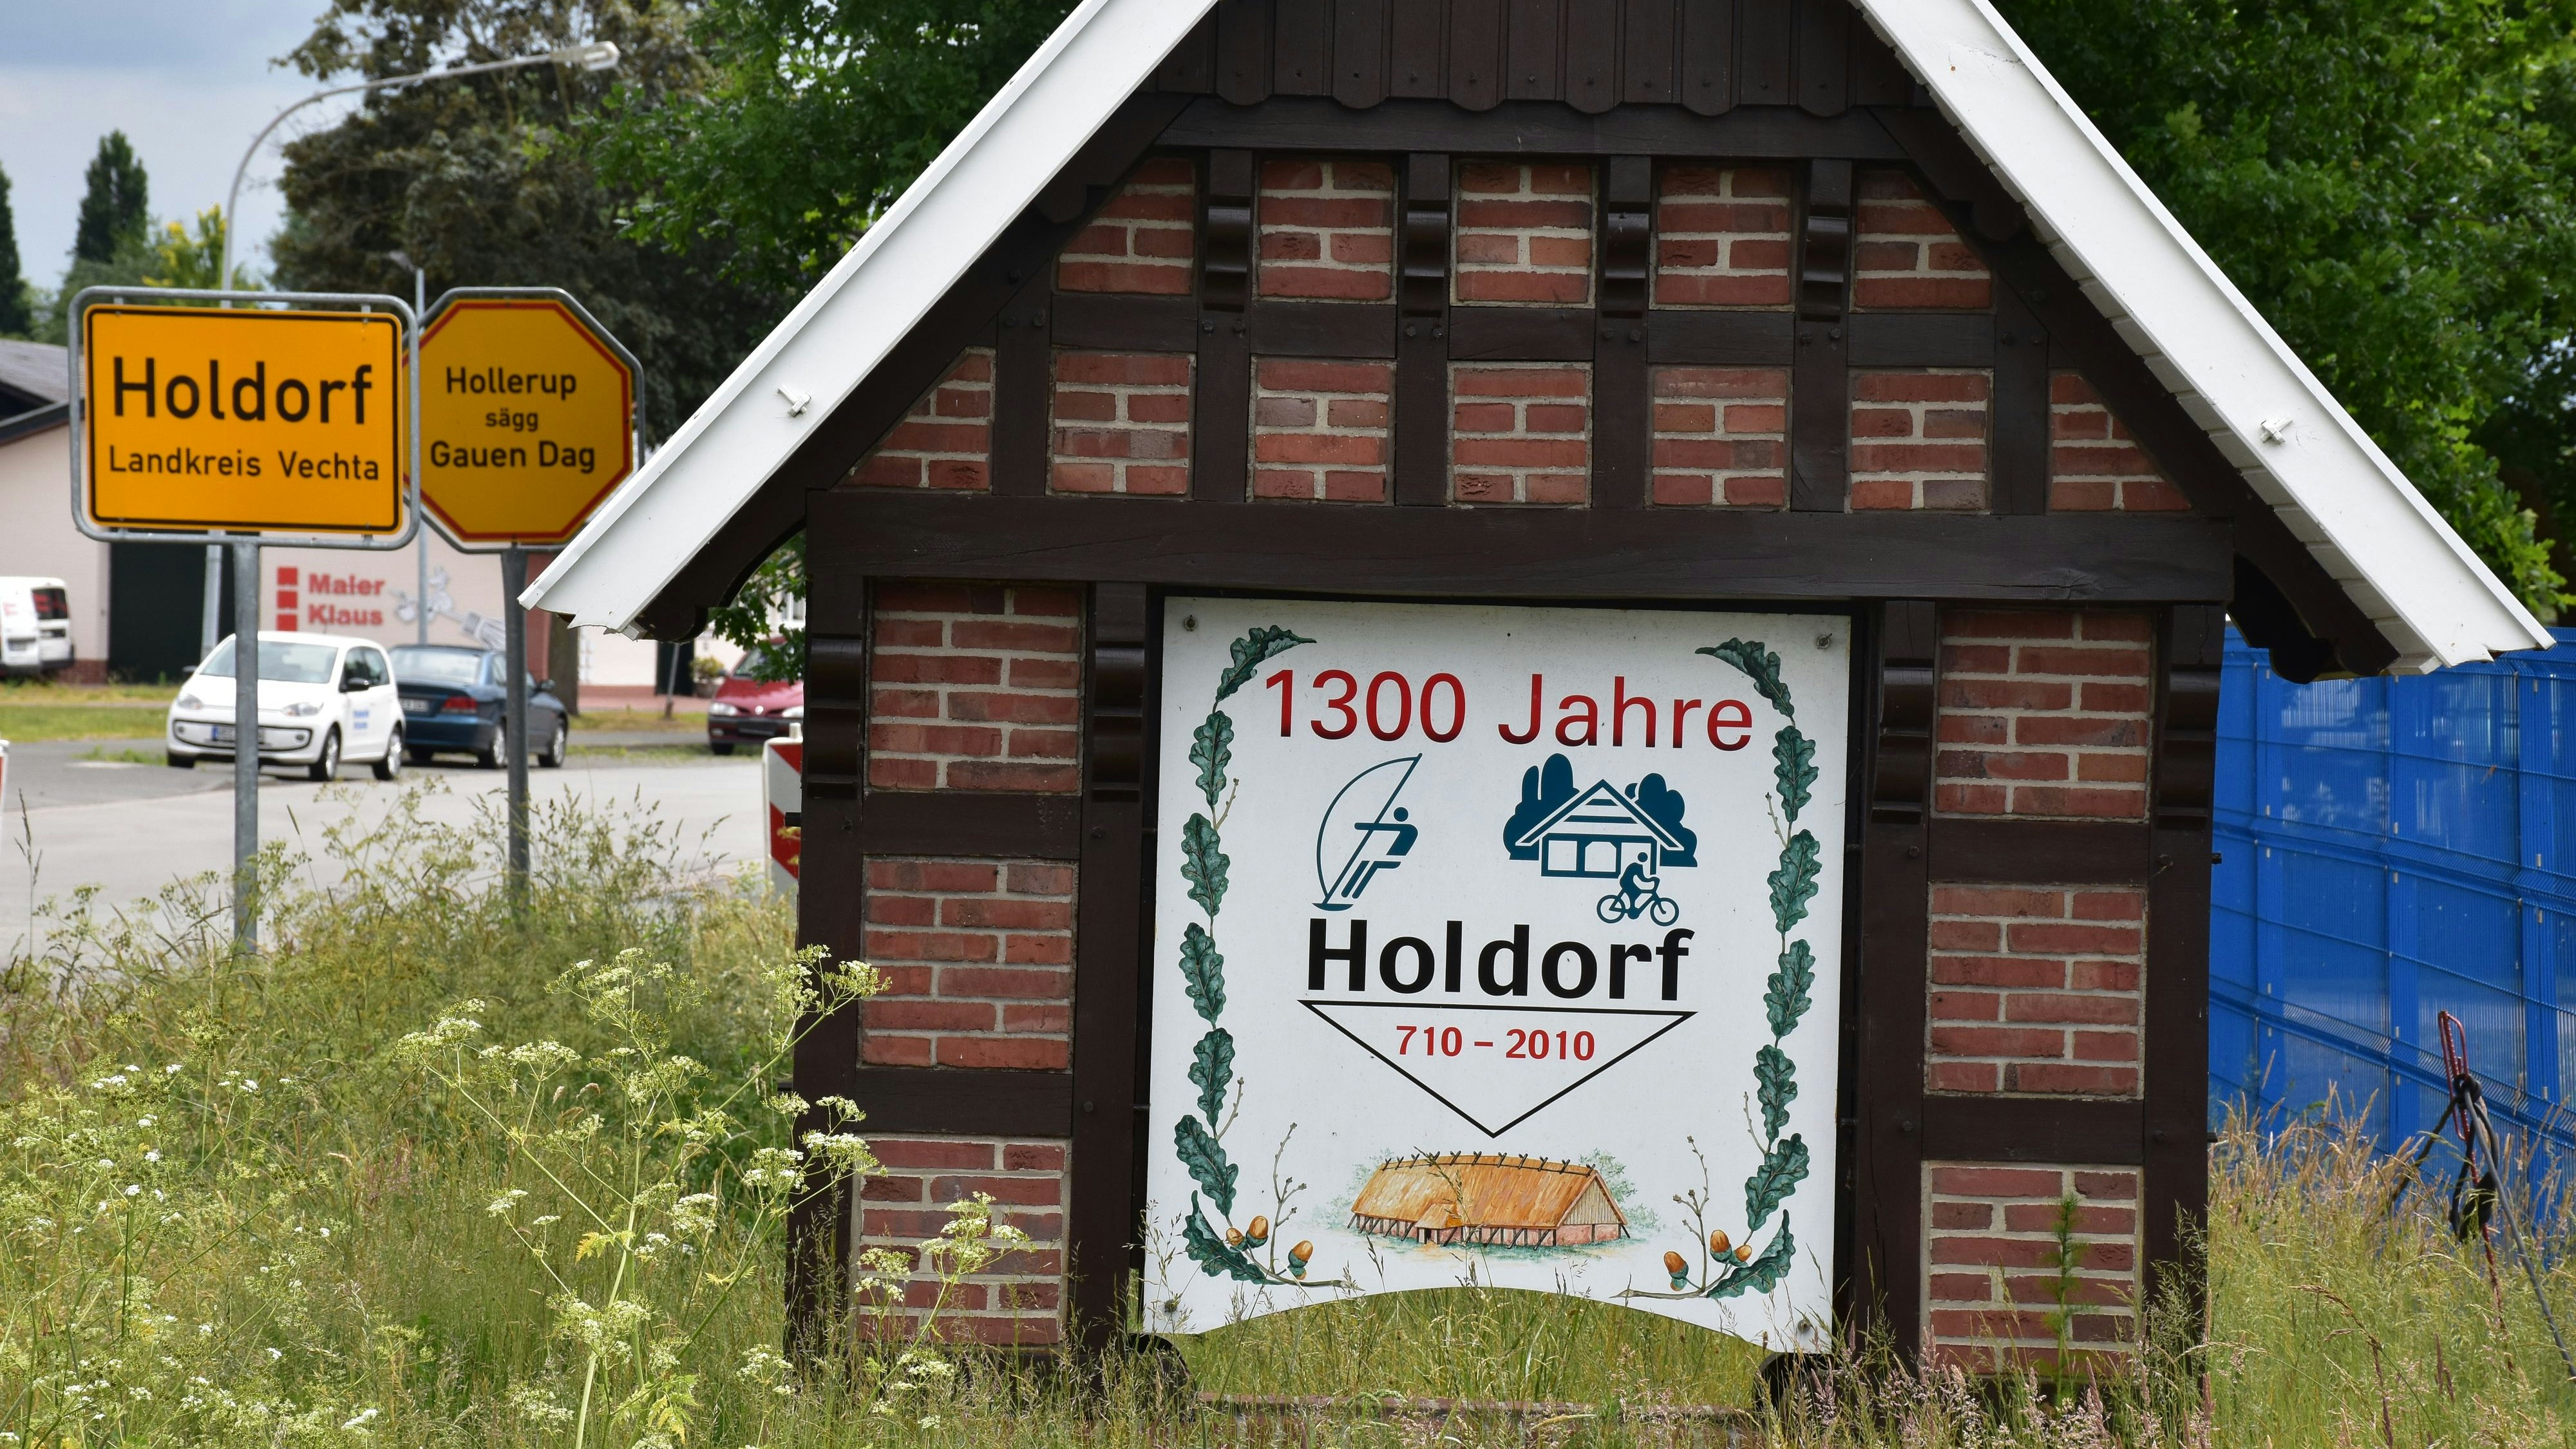 Wo gibt es in Holdorf noch Wohnraum? Die Gemeinde sucht händeringend Platz für Flüchtlinge und Obdachlose. Foto: Böckmann